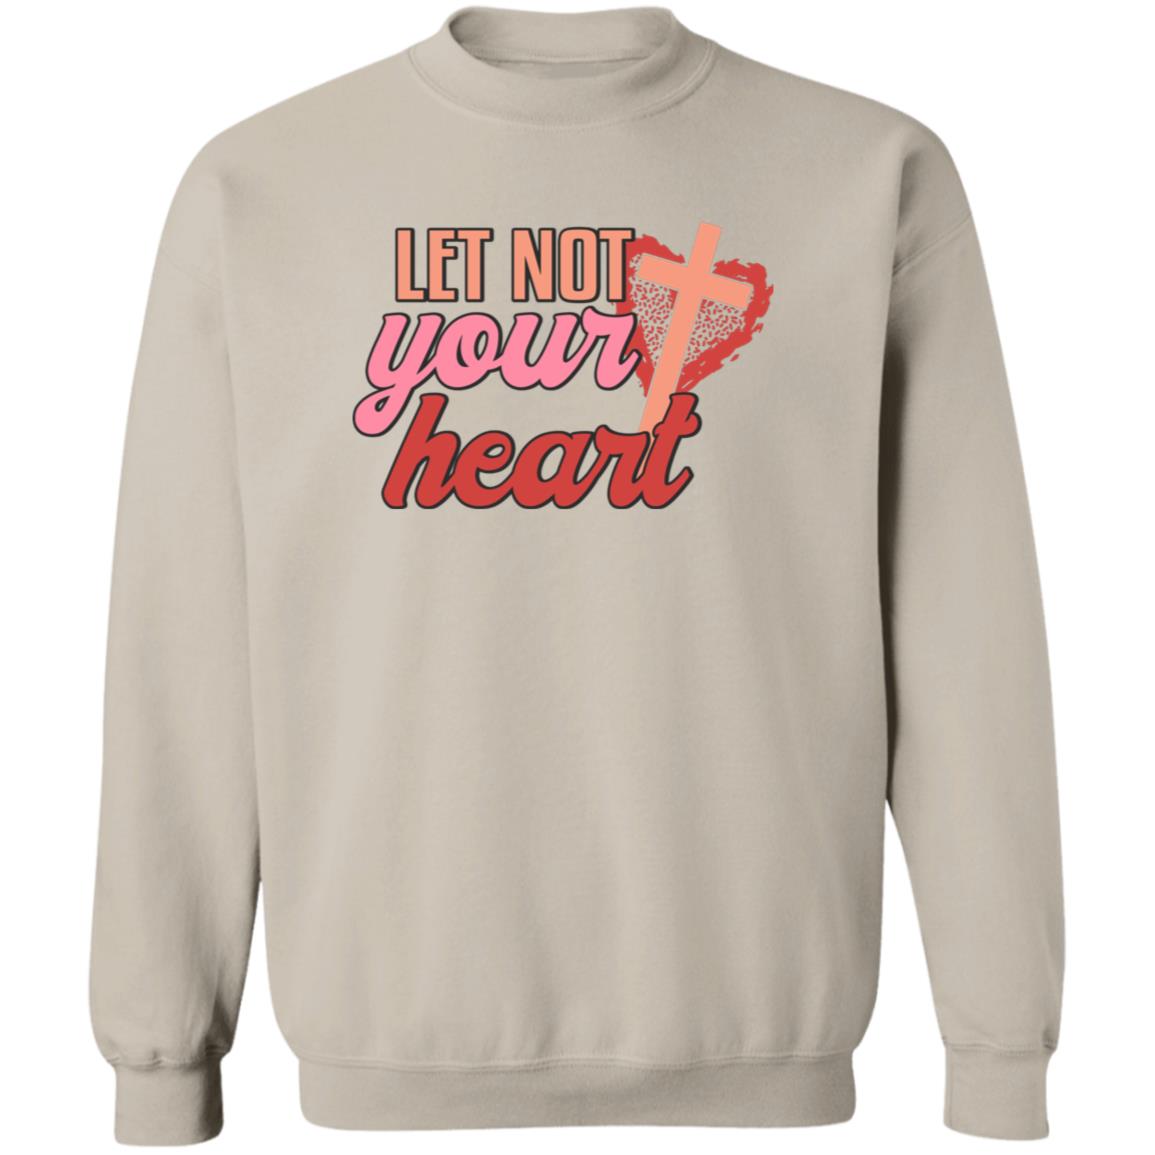 Let Not Your Heart Cross Sweatshirt